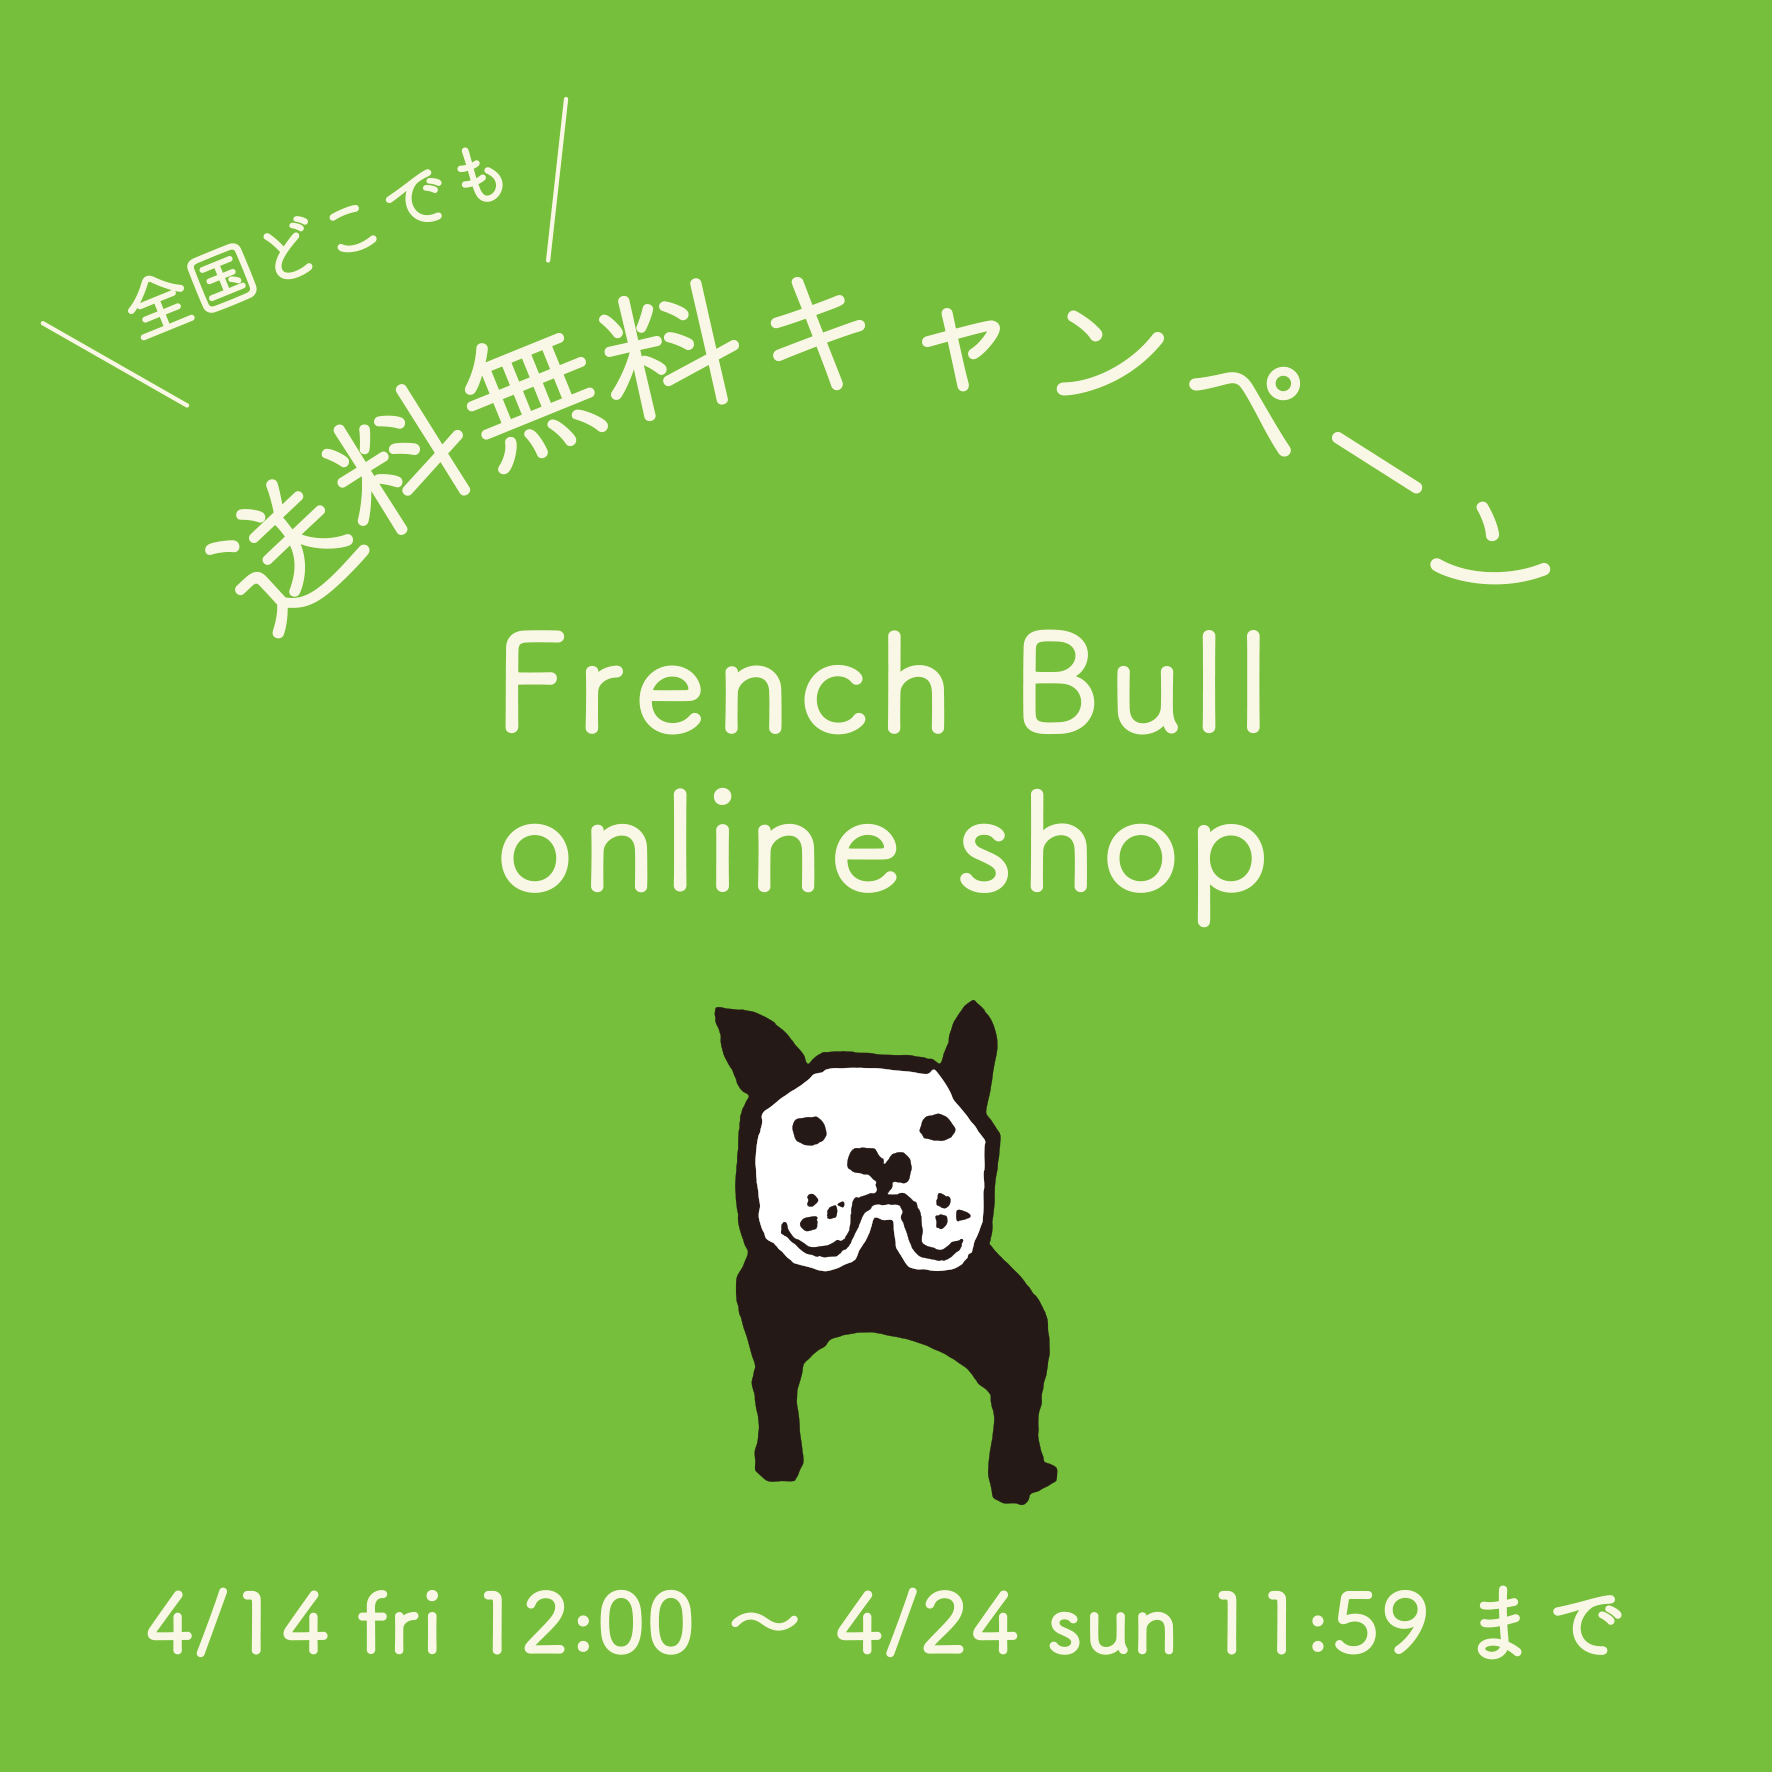 “ French Bull online shop ” 春の送料無料キャンペーンのお知らせ